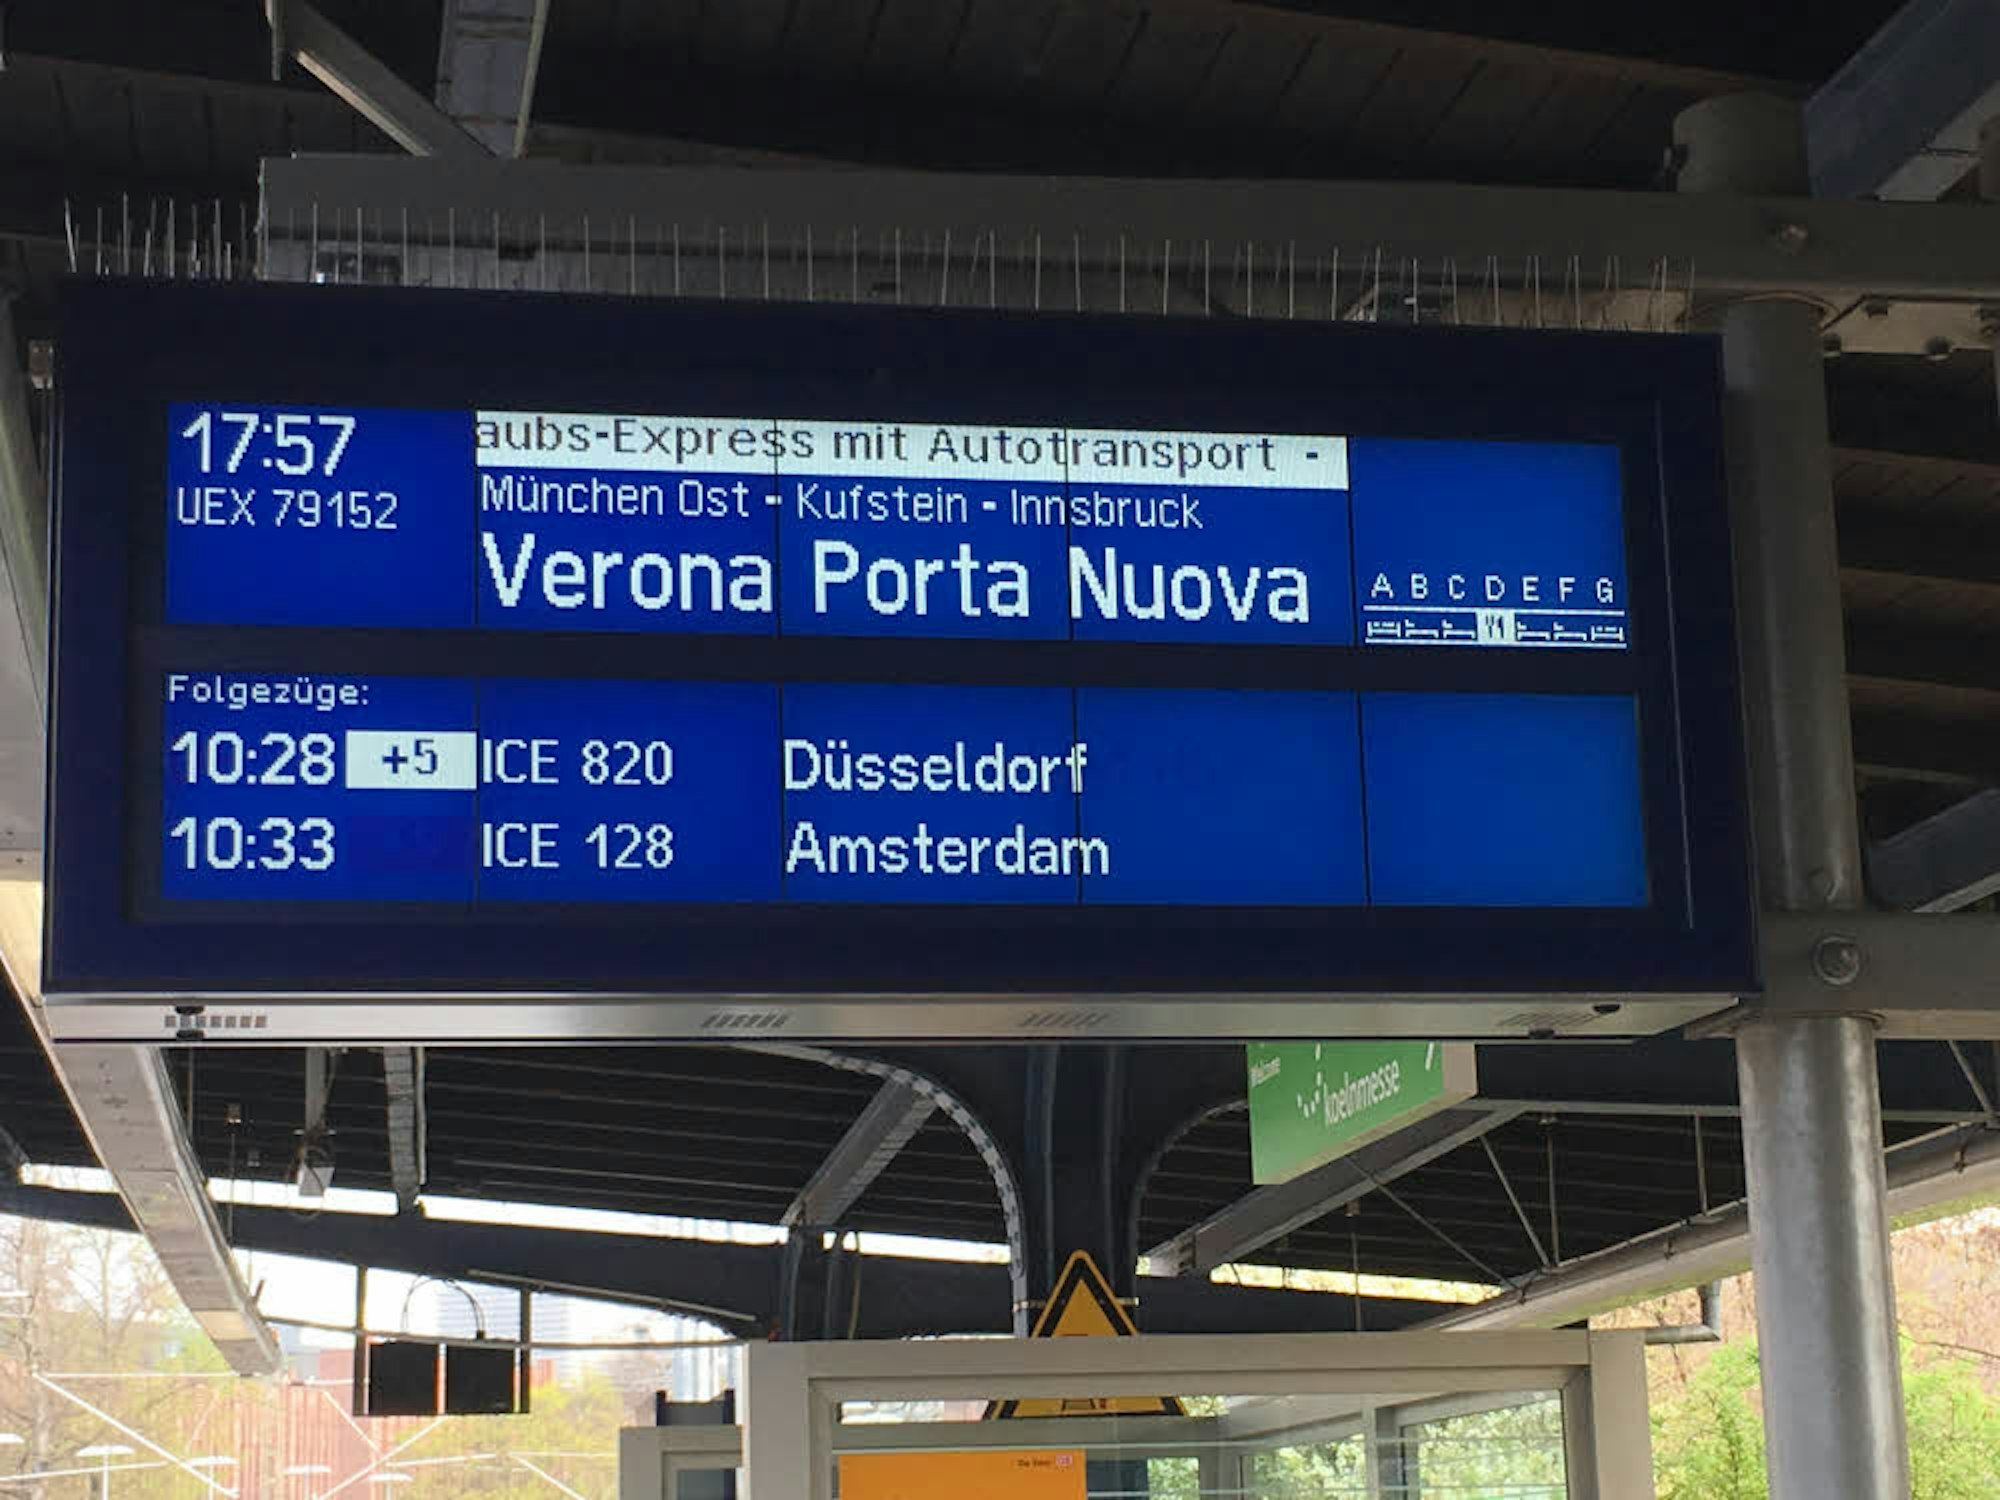 Die erste Kölner Fahrt des Urlaubs-Express aus findet am 22. Juni statt und führt nach Verona. Verladen werden die Fahrzeuge in Düsseldorf.